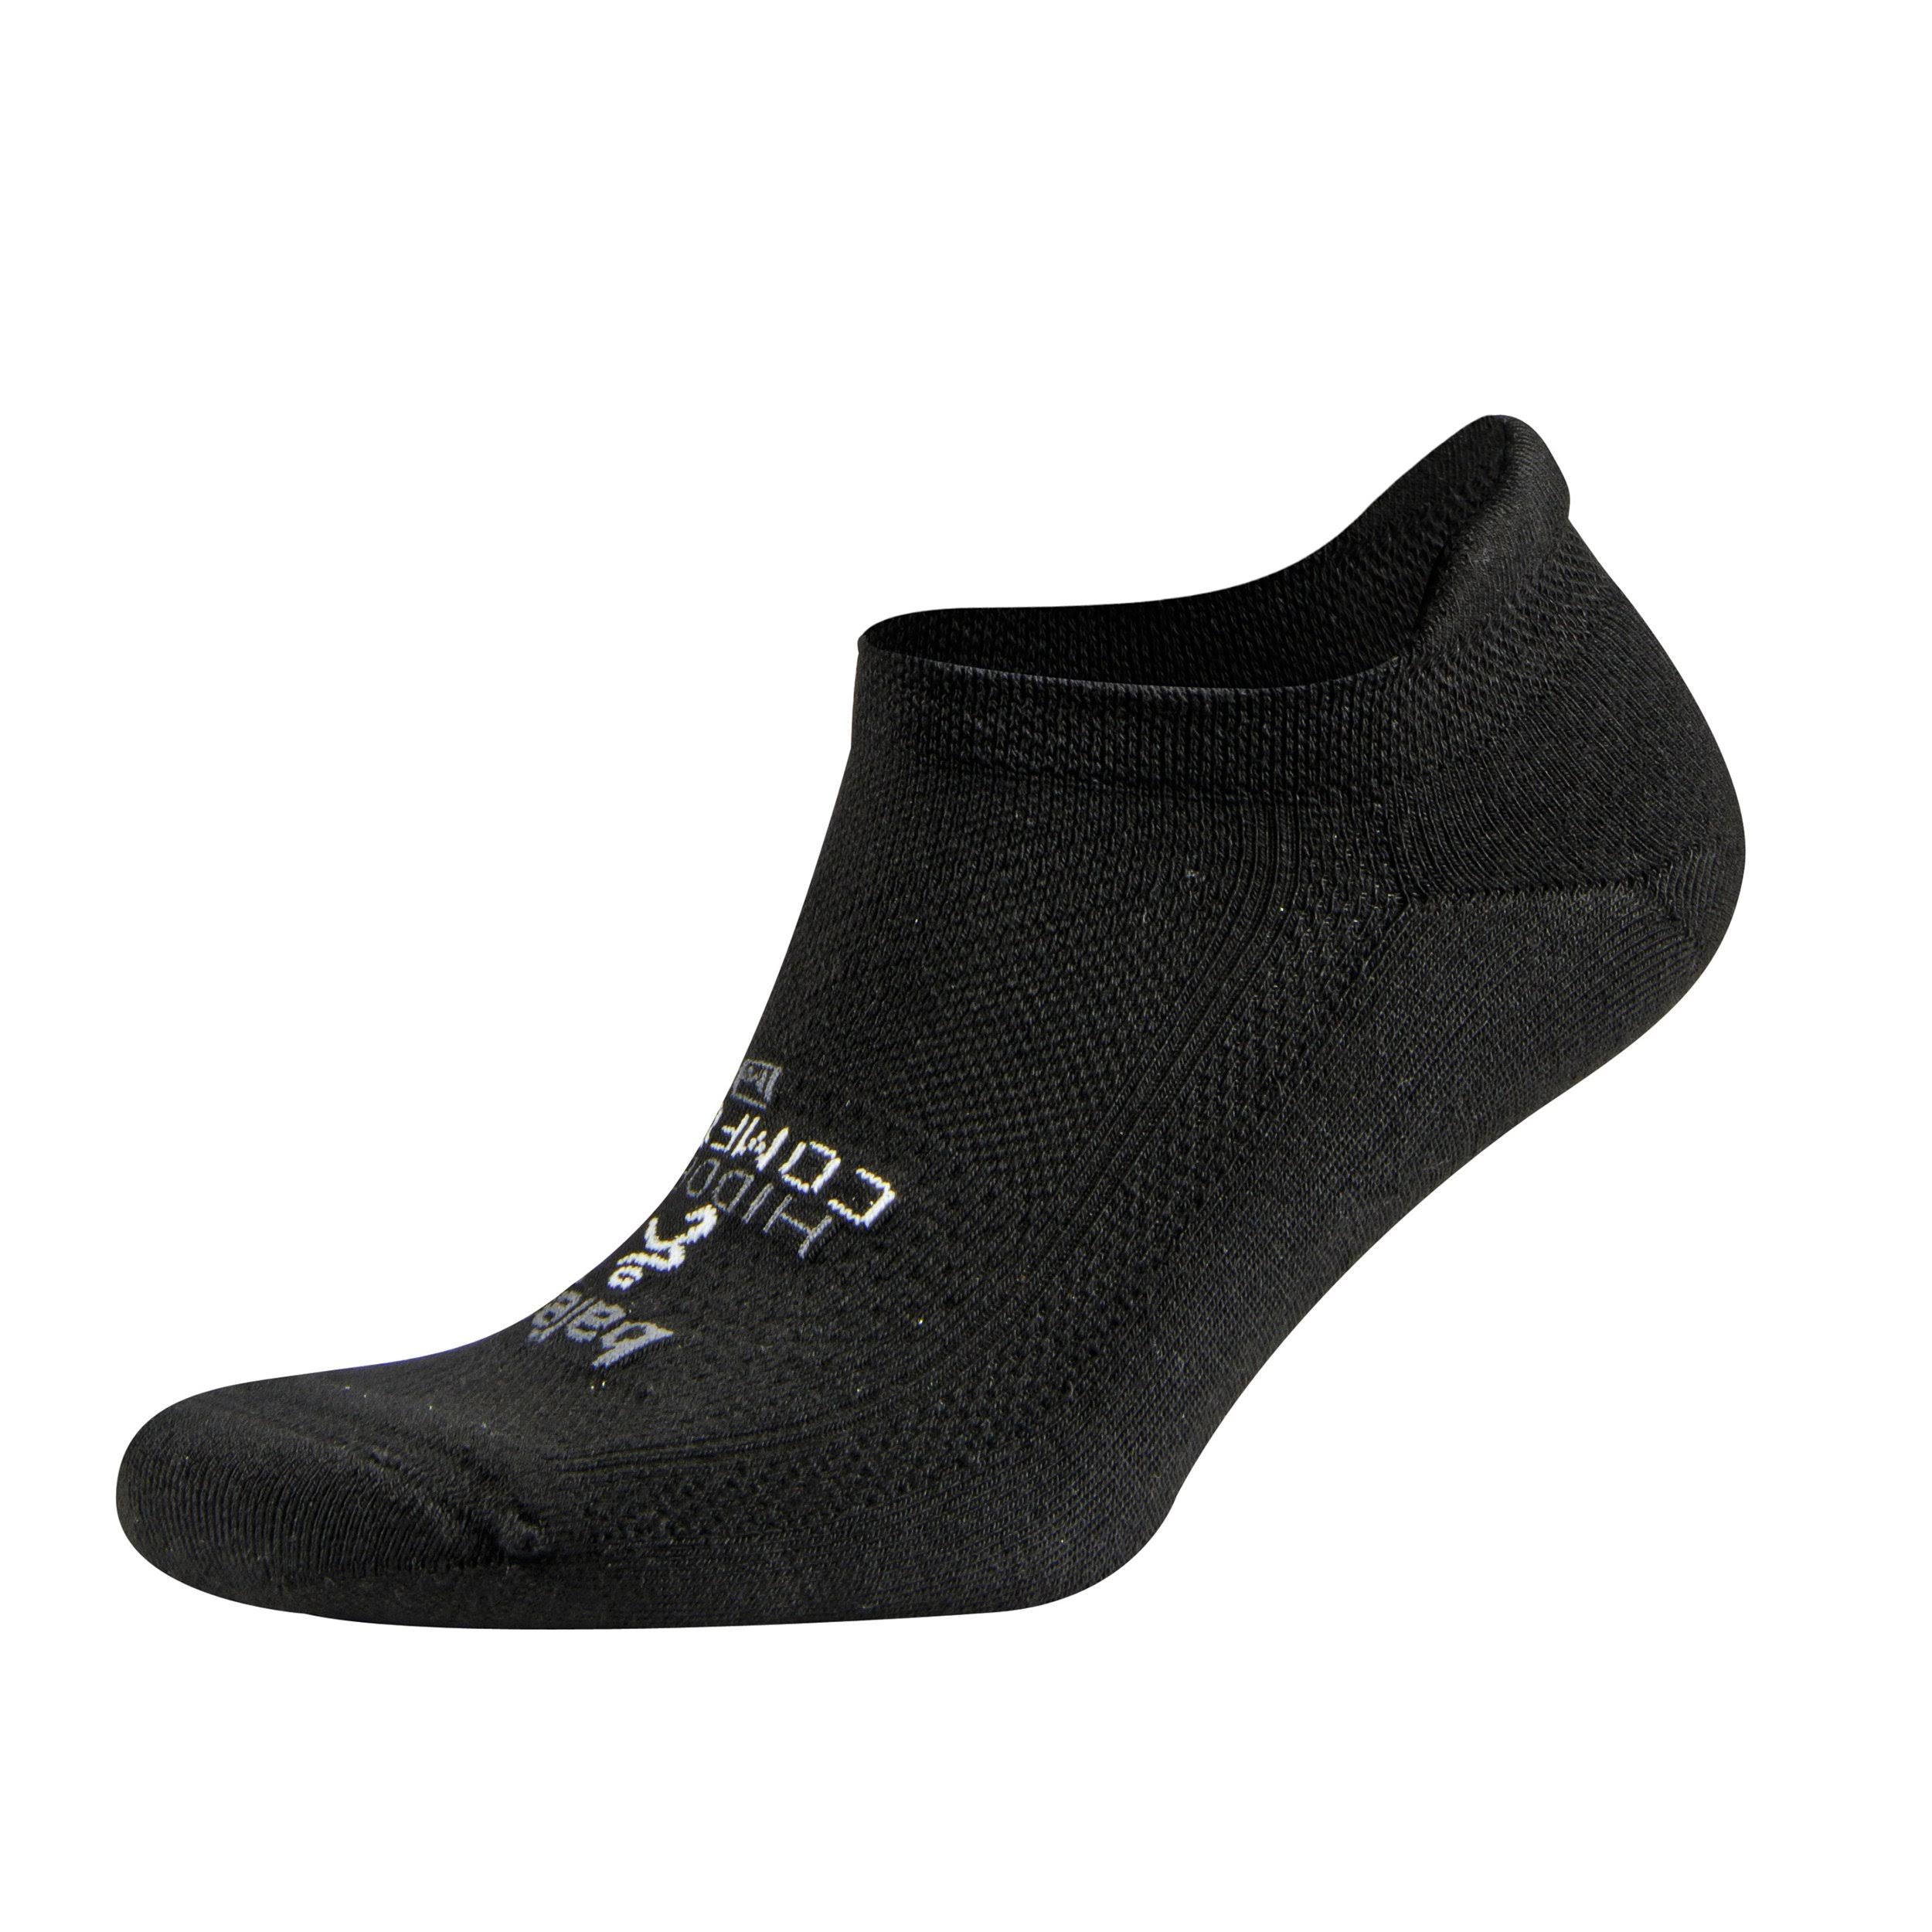 Balega Hidden Comfort Sole Cushioning Running Socks - Black, Medium